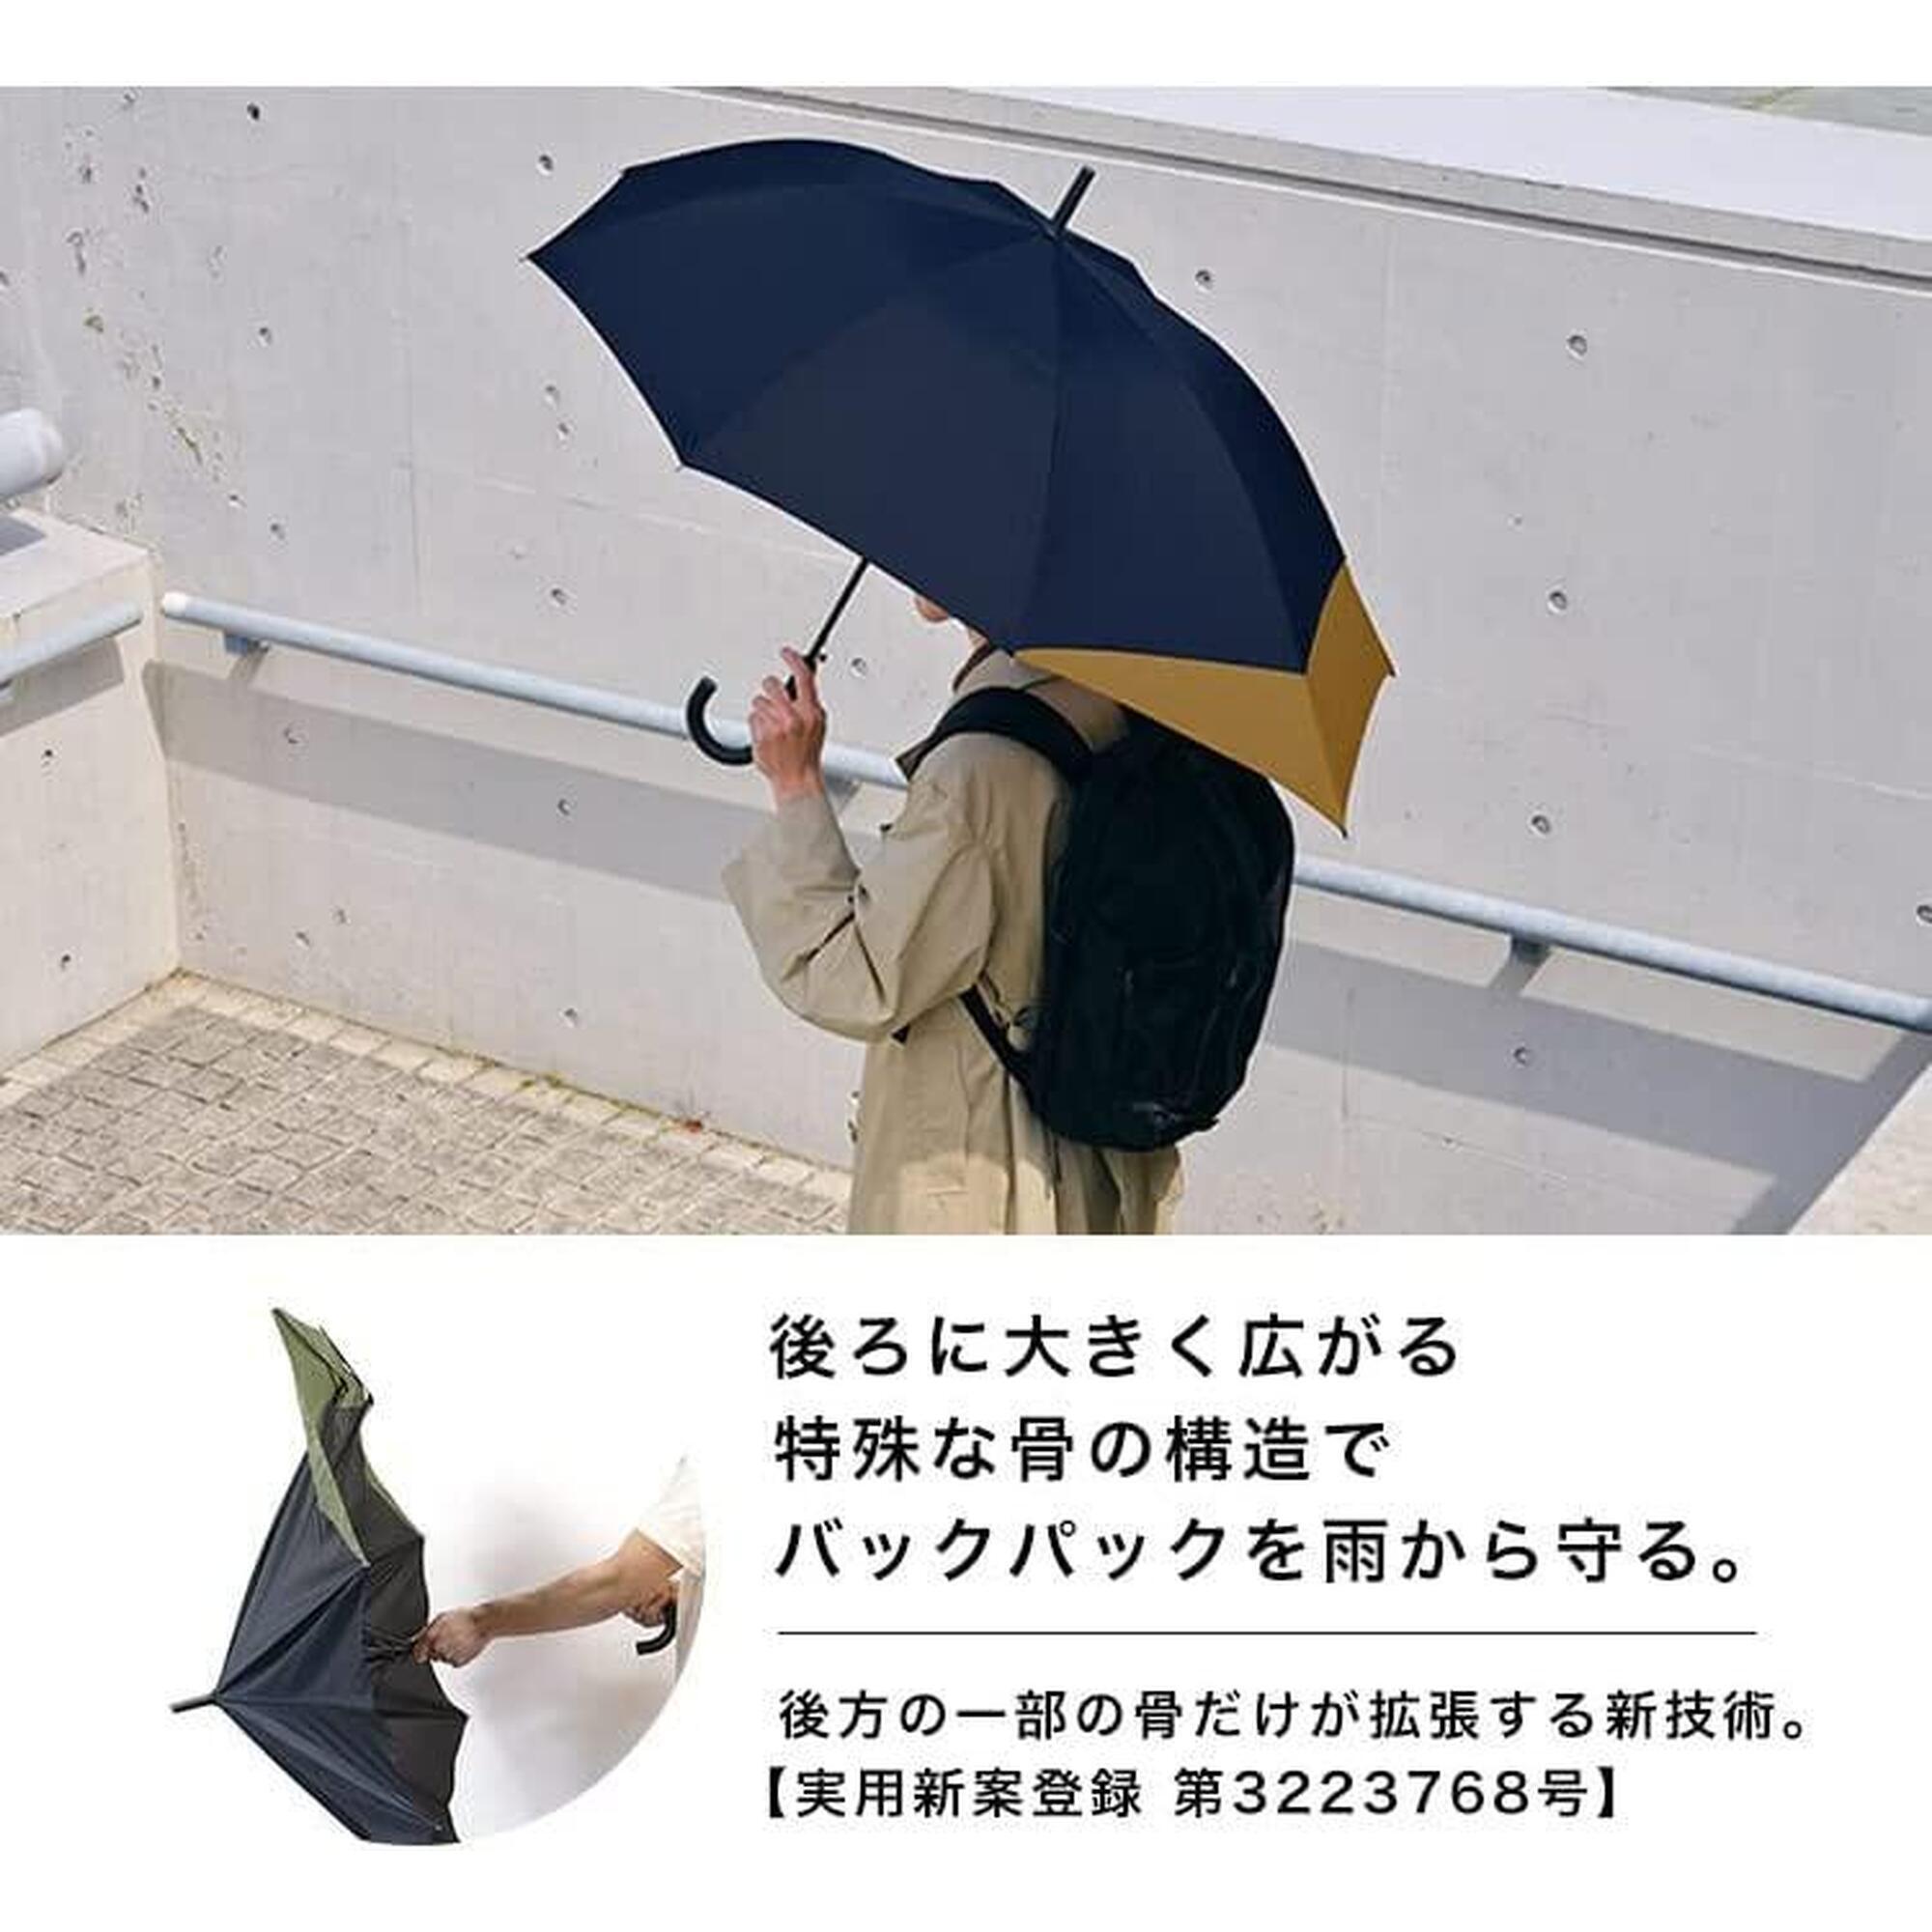 UX 戶外情侶長雨傘 - 灰及藍色